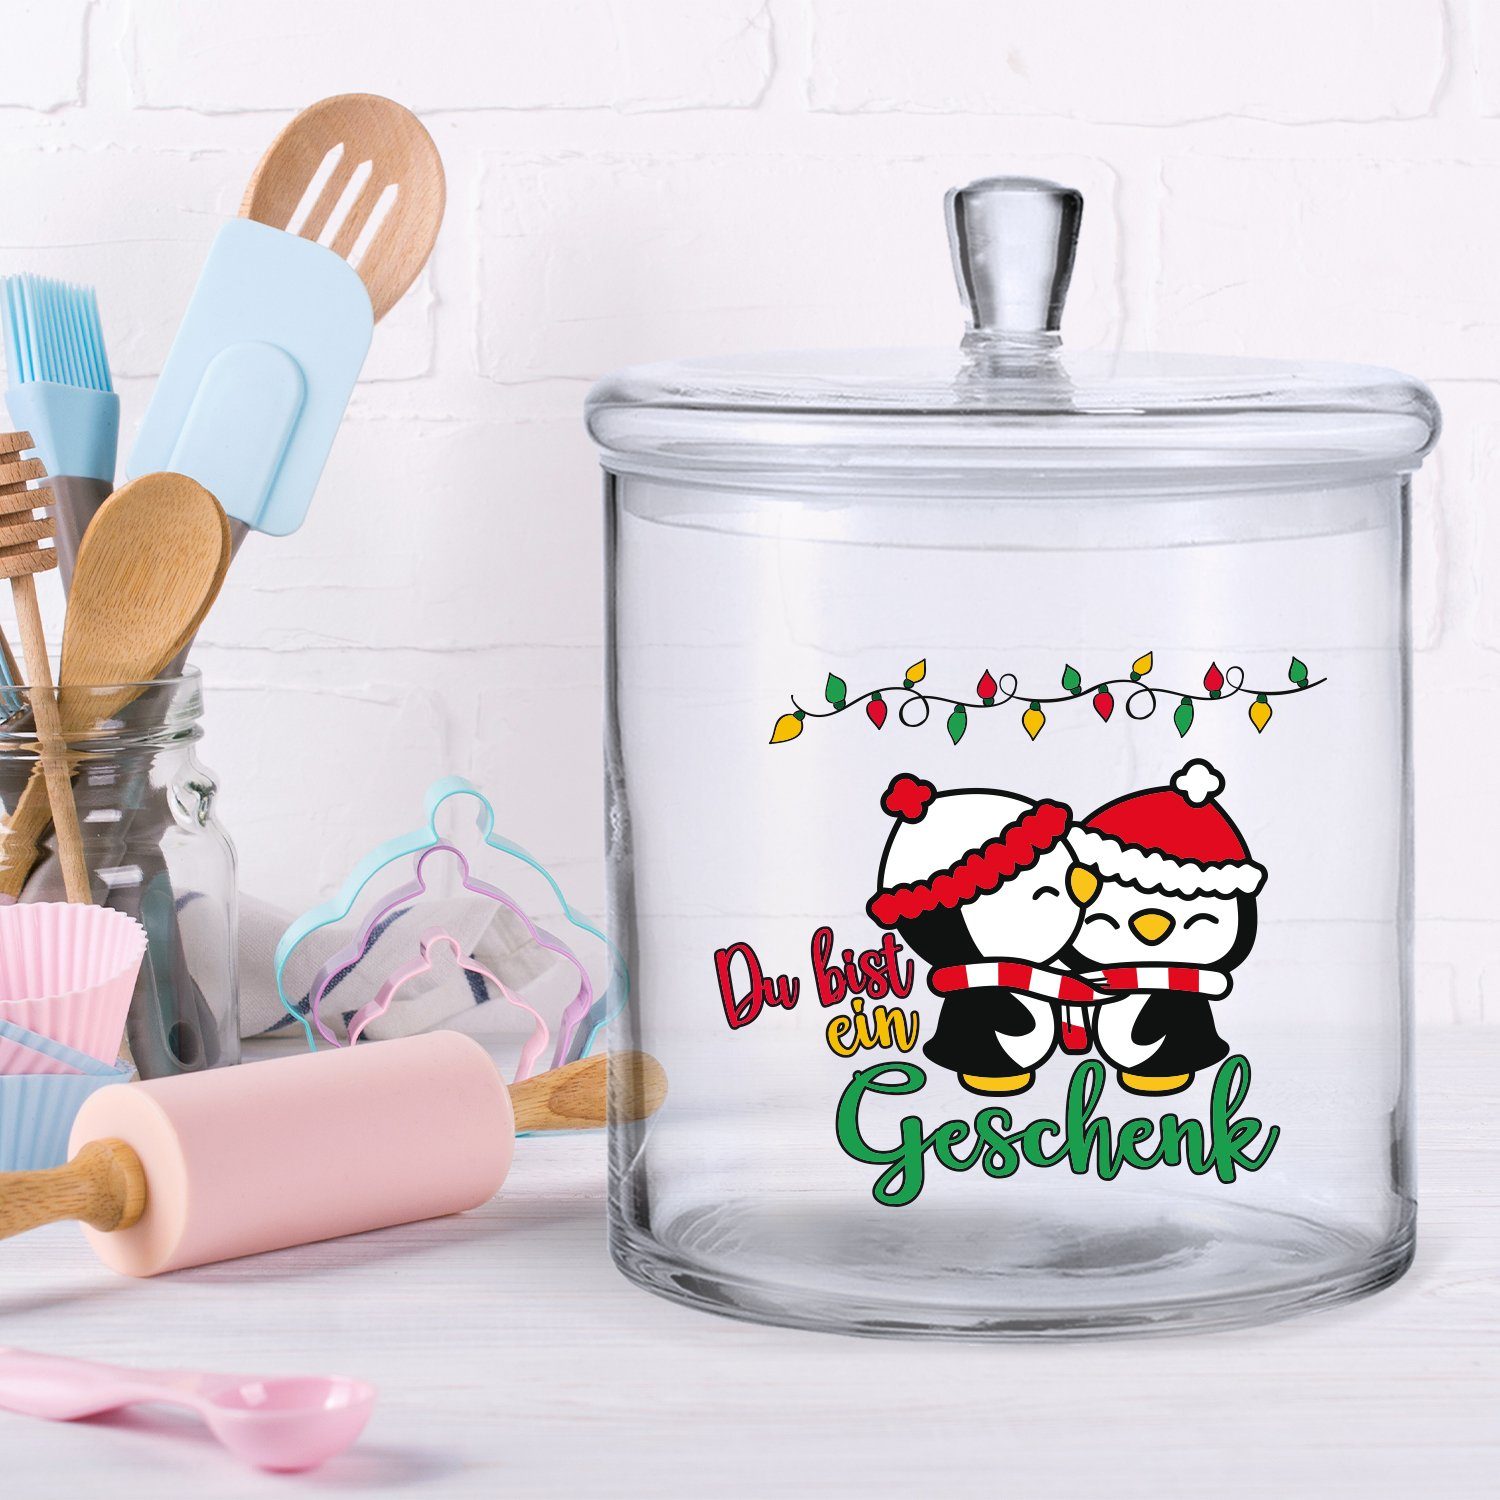 UV-Druck Du Geschenk mit Glasdose Freunde - ein bist luftdichtem mit Handgefertigte Keksdose Partner, Familie & Keksdose GRAVURZEILE Weihnachten Glas, für Deckel, zu -